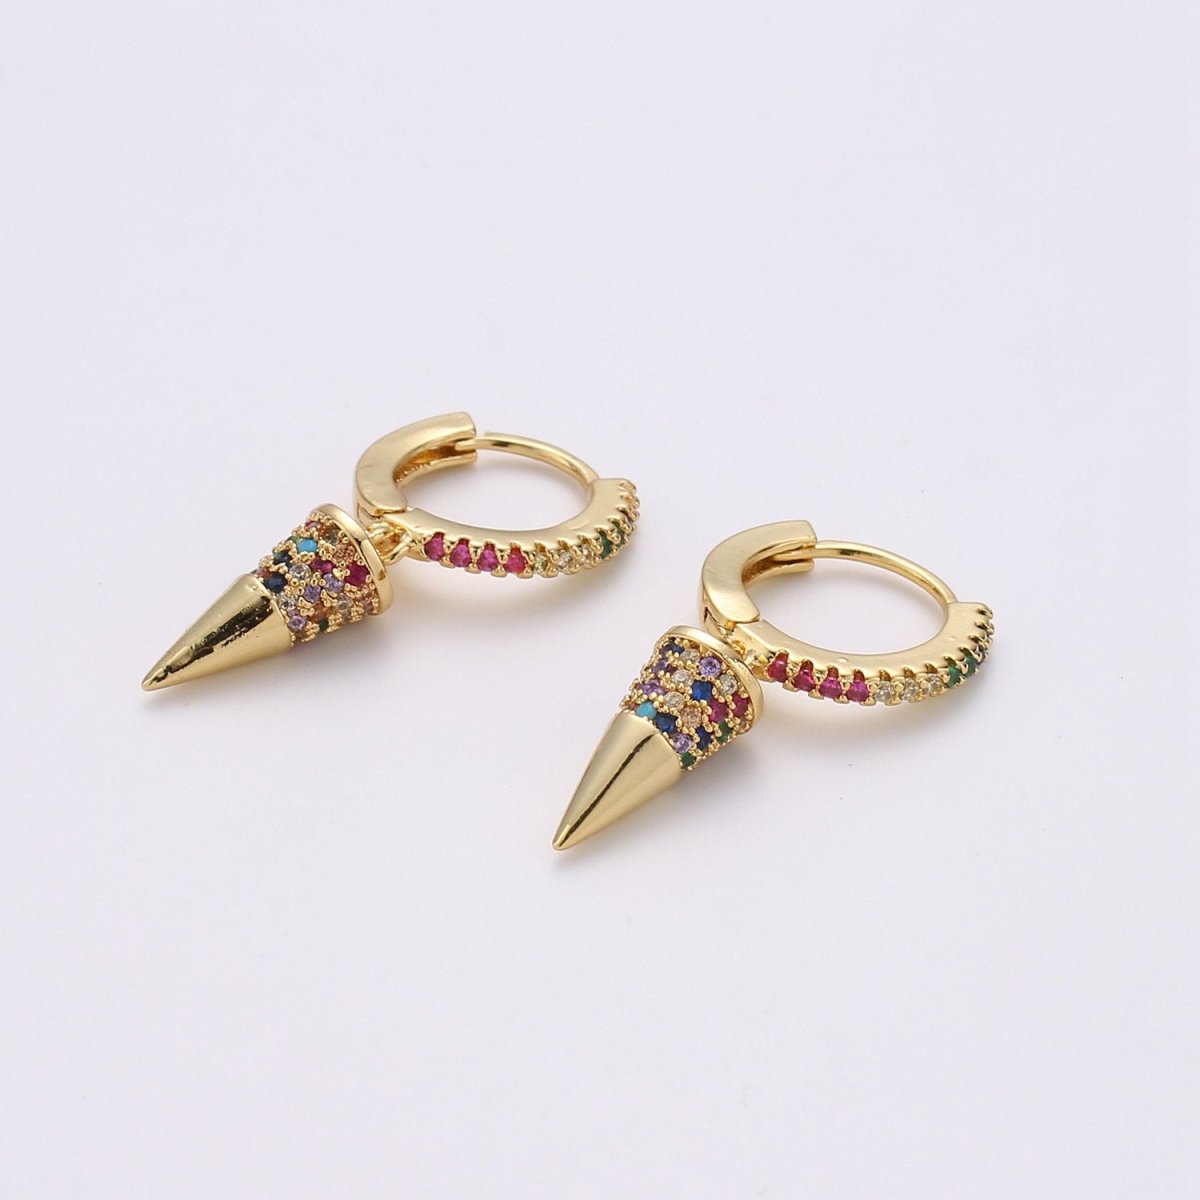 OS Gold Spike Earrings, Spike Hoop Earrings, Micro Pave Hoop Dangle Earrings, Minimalist Earring, Small Gold Hoops Earring, Dainty Drop Earring K-590 - DLUXCA